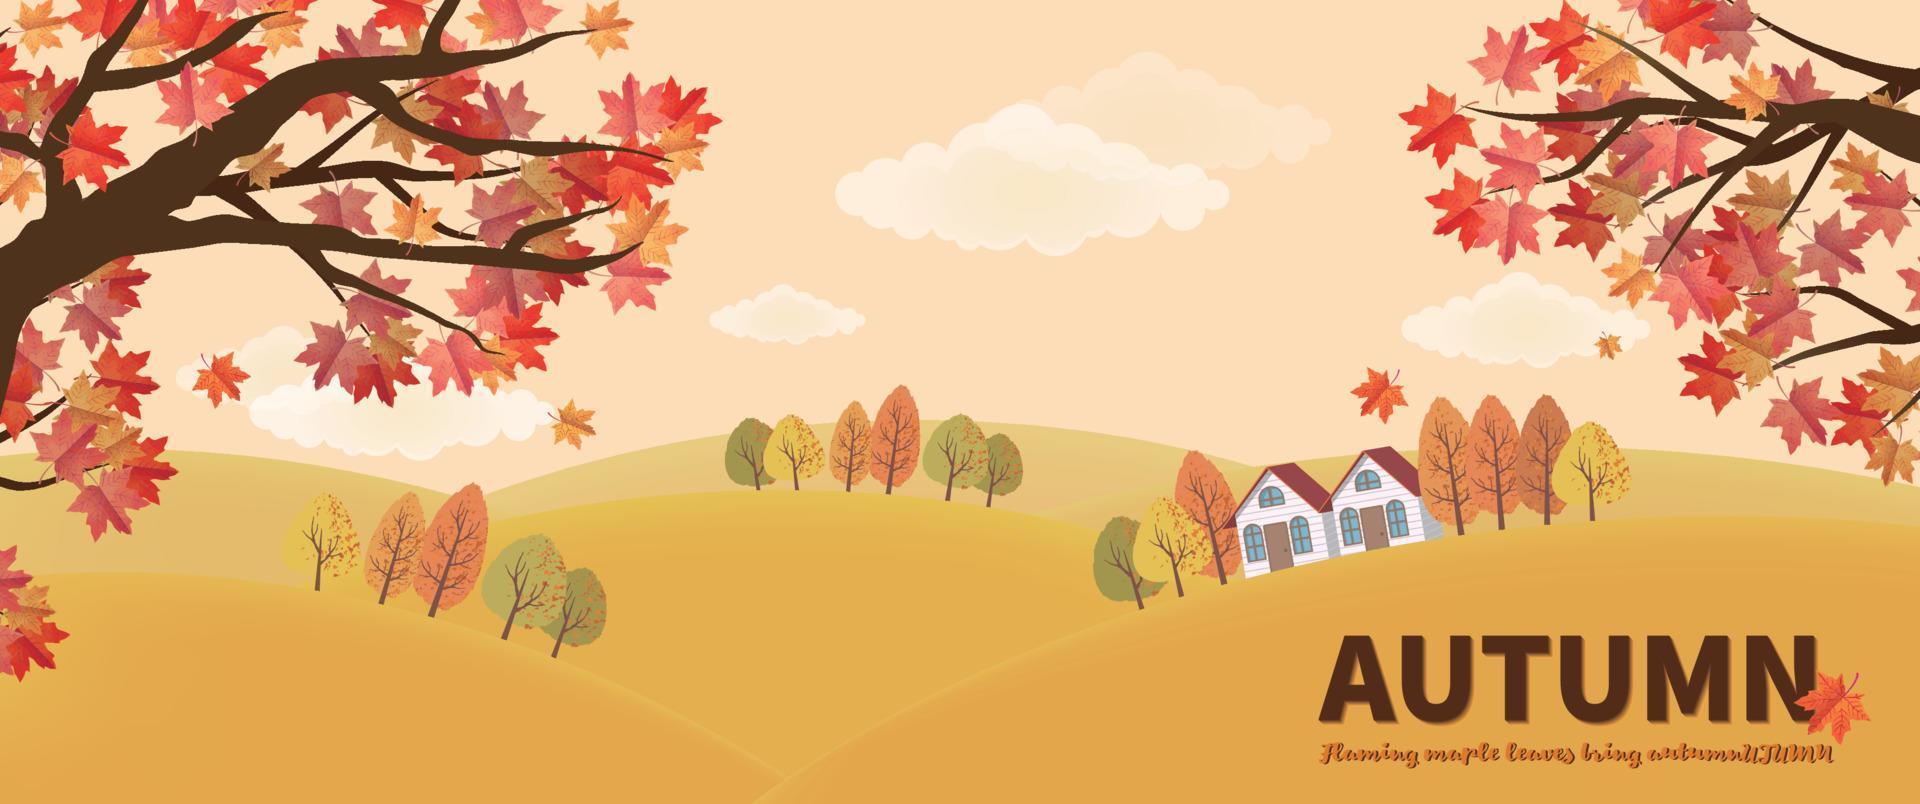 bannière d'automne avec érables rouges et cabane à flanc de colline vecteur